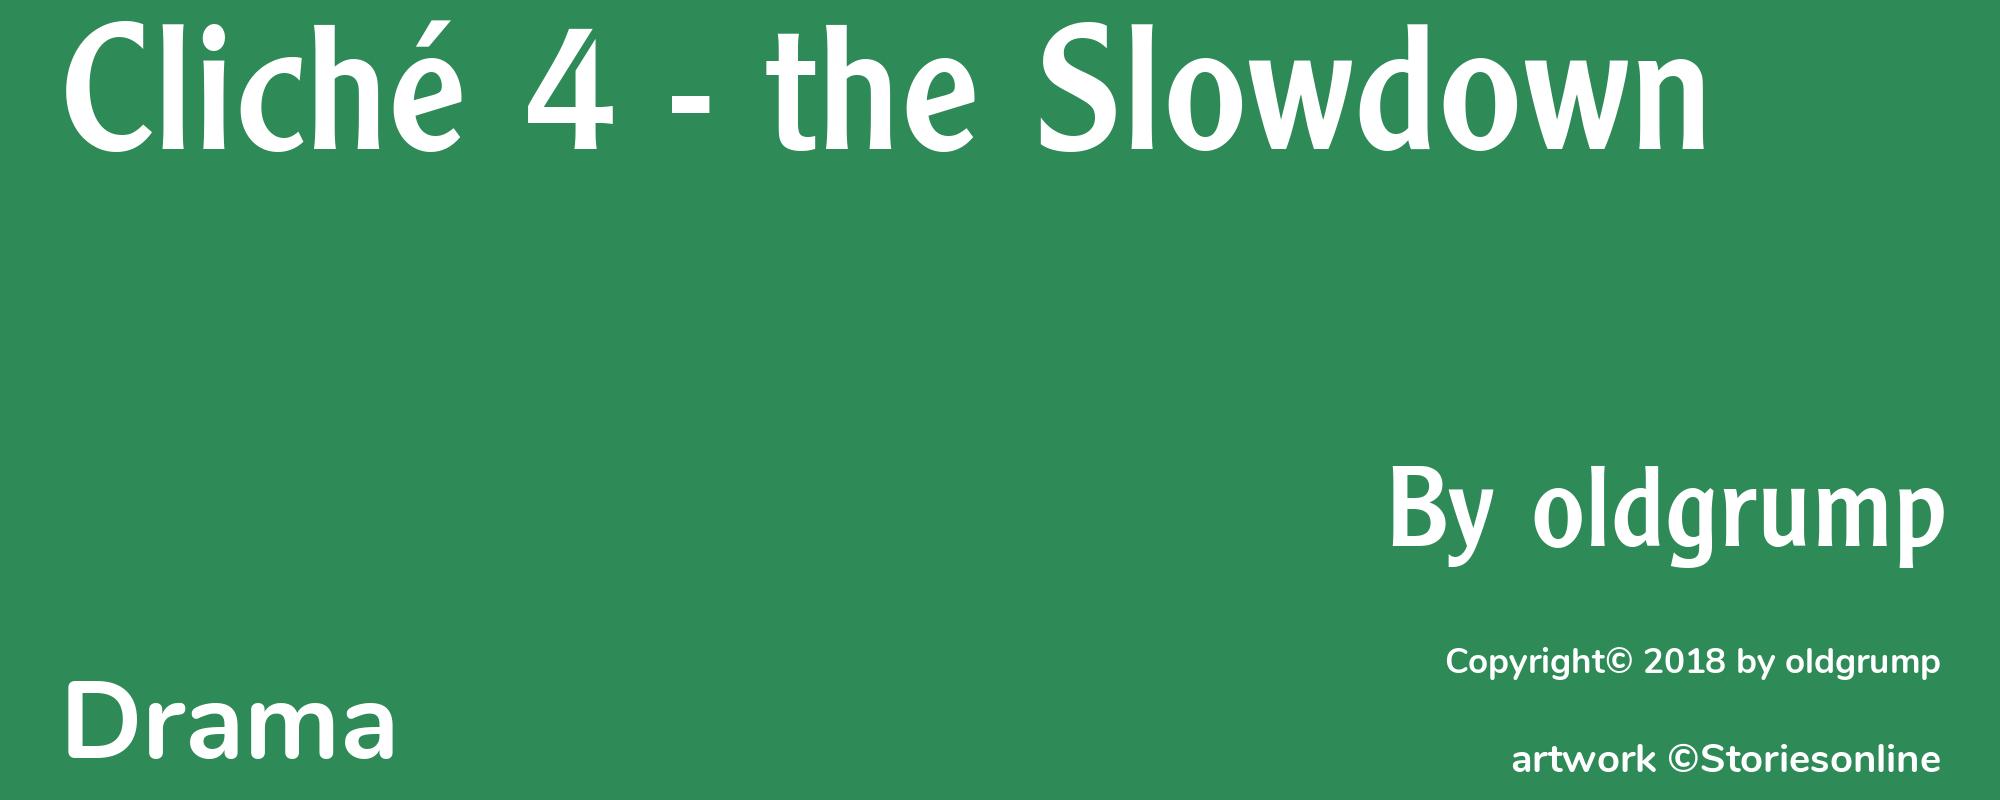 Cliché 4 - the Slowdown - Cover